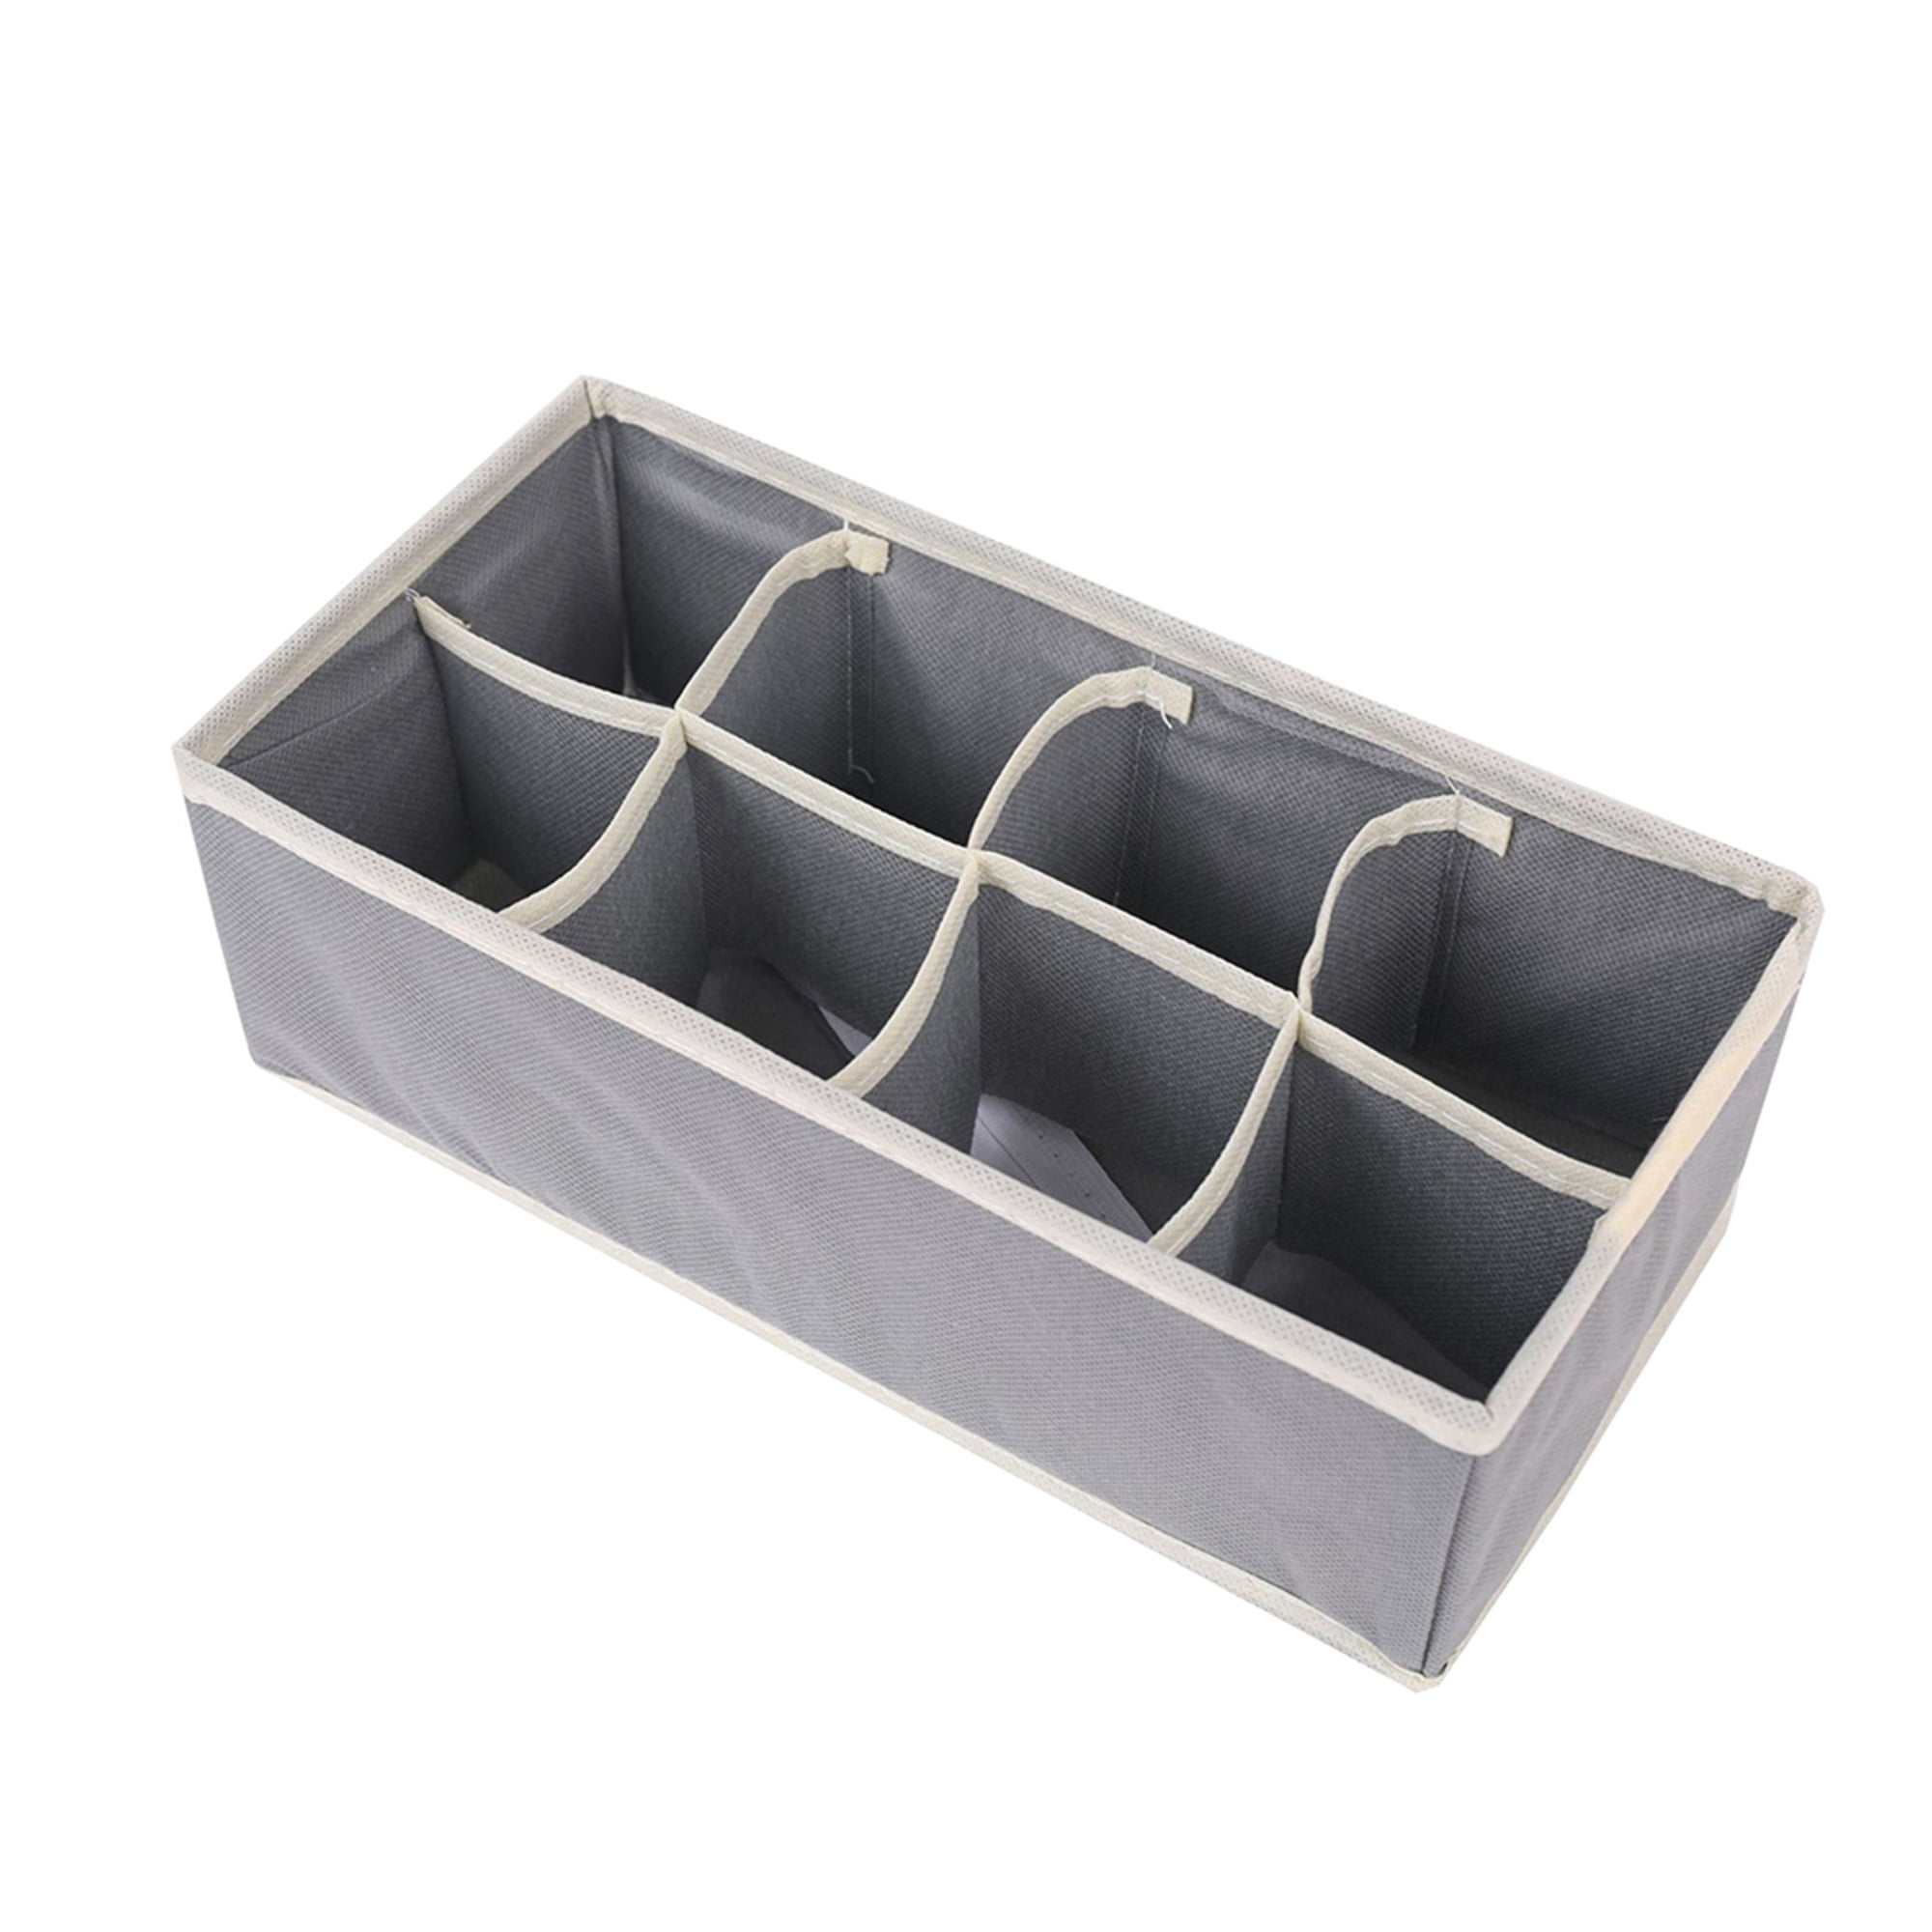 Details about   Underwear Storage Compartment Box Foldable Bra Organizer Drawer Re